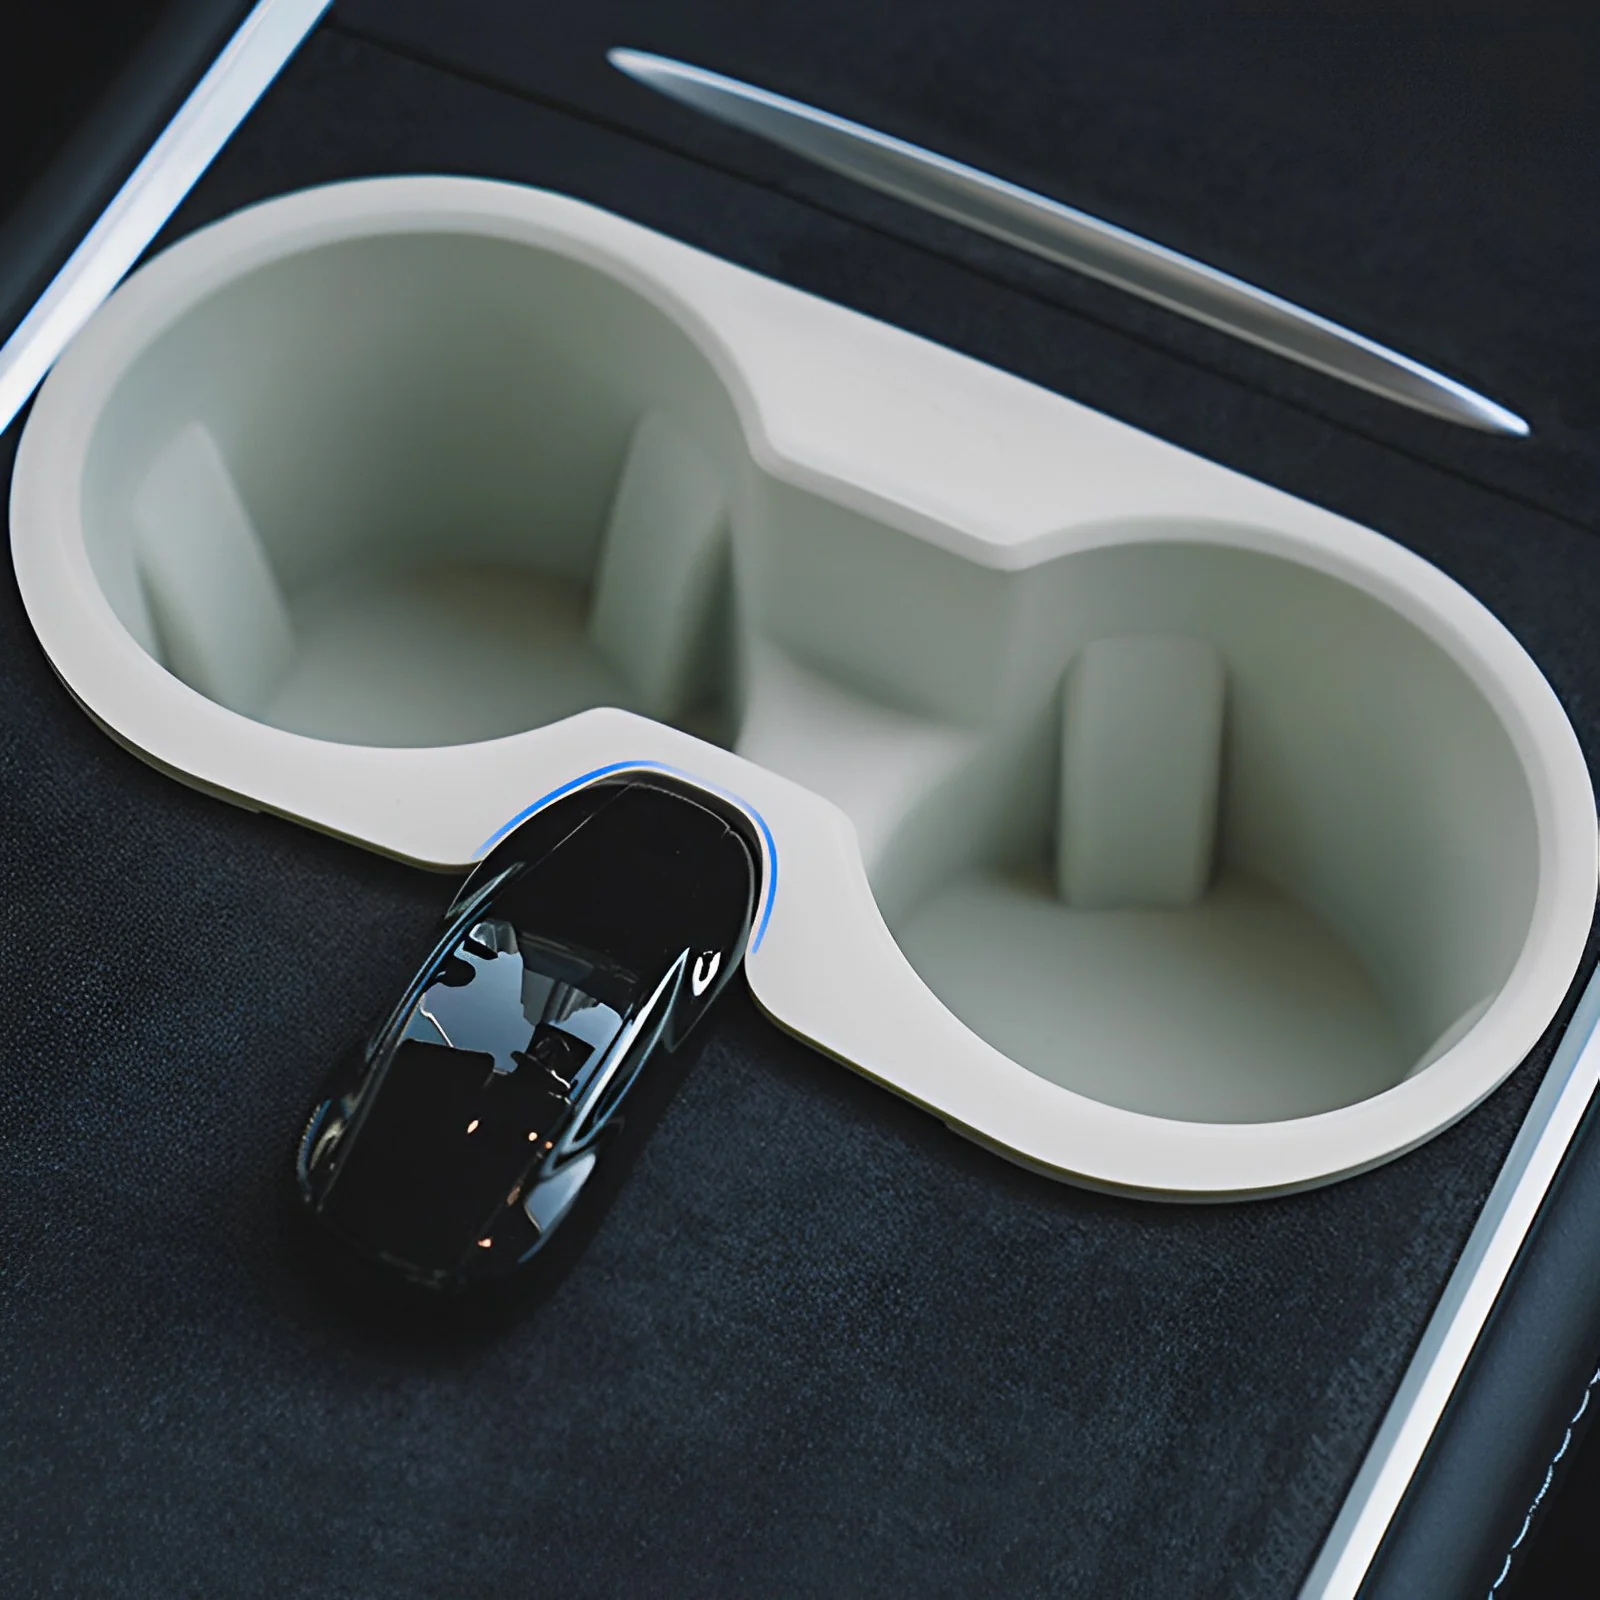 Porte-gobelet en silicone pour Tesla Model 3/Y - Ajustement parfait et antidérapant